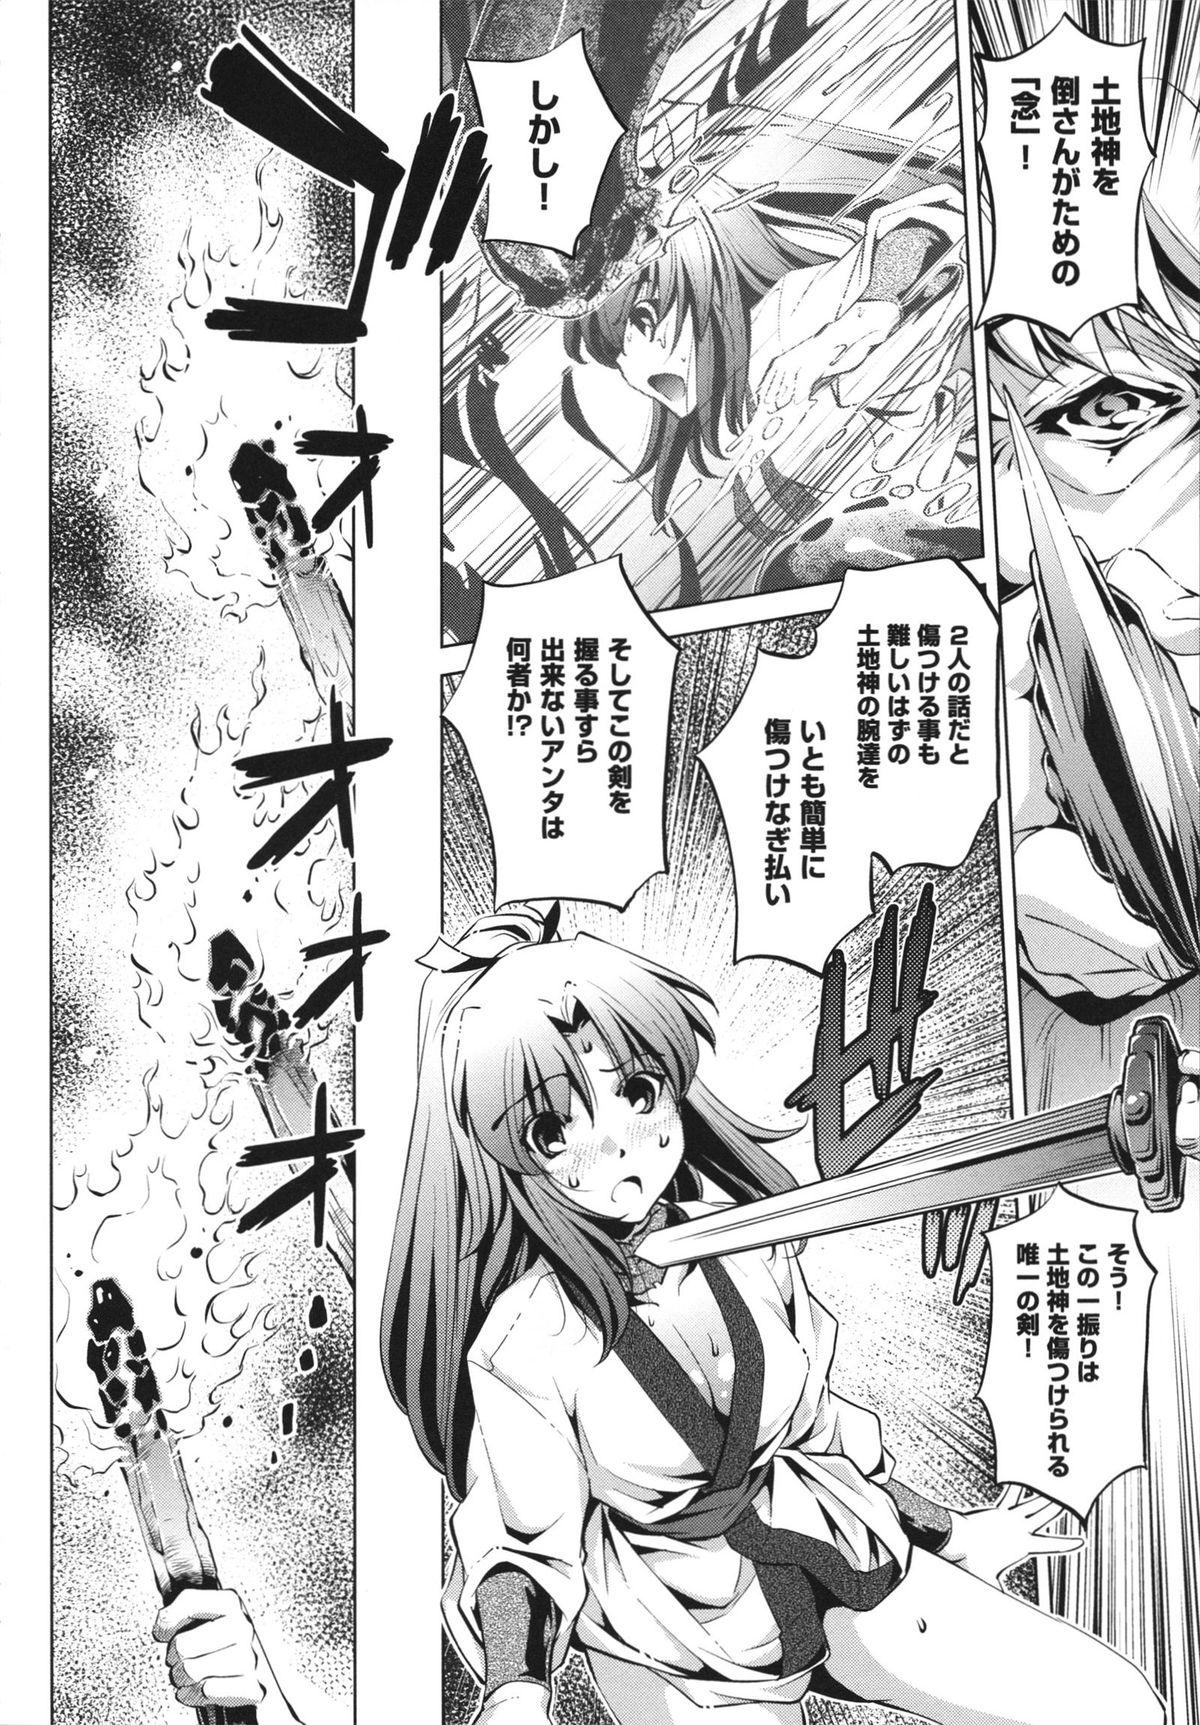 [Ootori Ryuuji] Shokushu wa Yawarakana Chibusa ni Makitsuki Onna-tachi no Ana wo Kakimidasu - Feeler coils around a soft breast and violates women's hole. 167